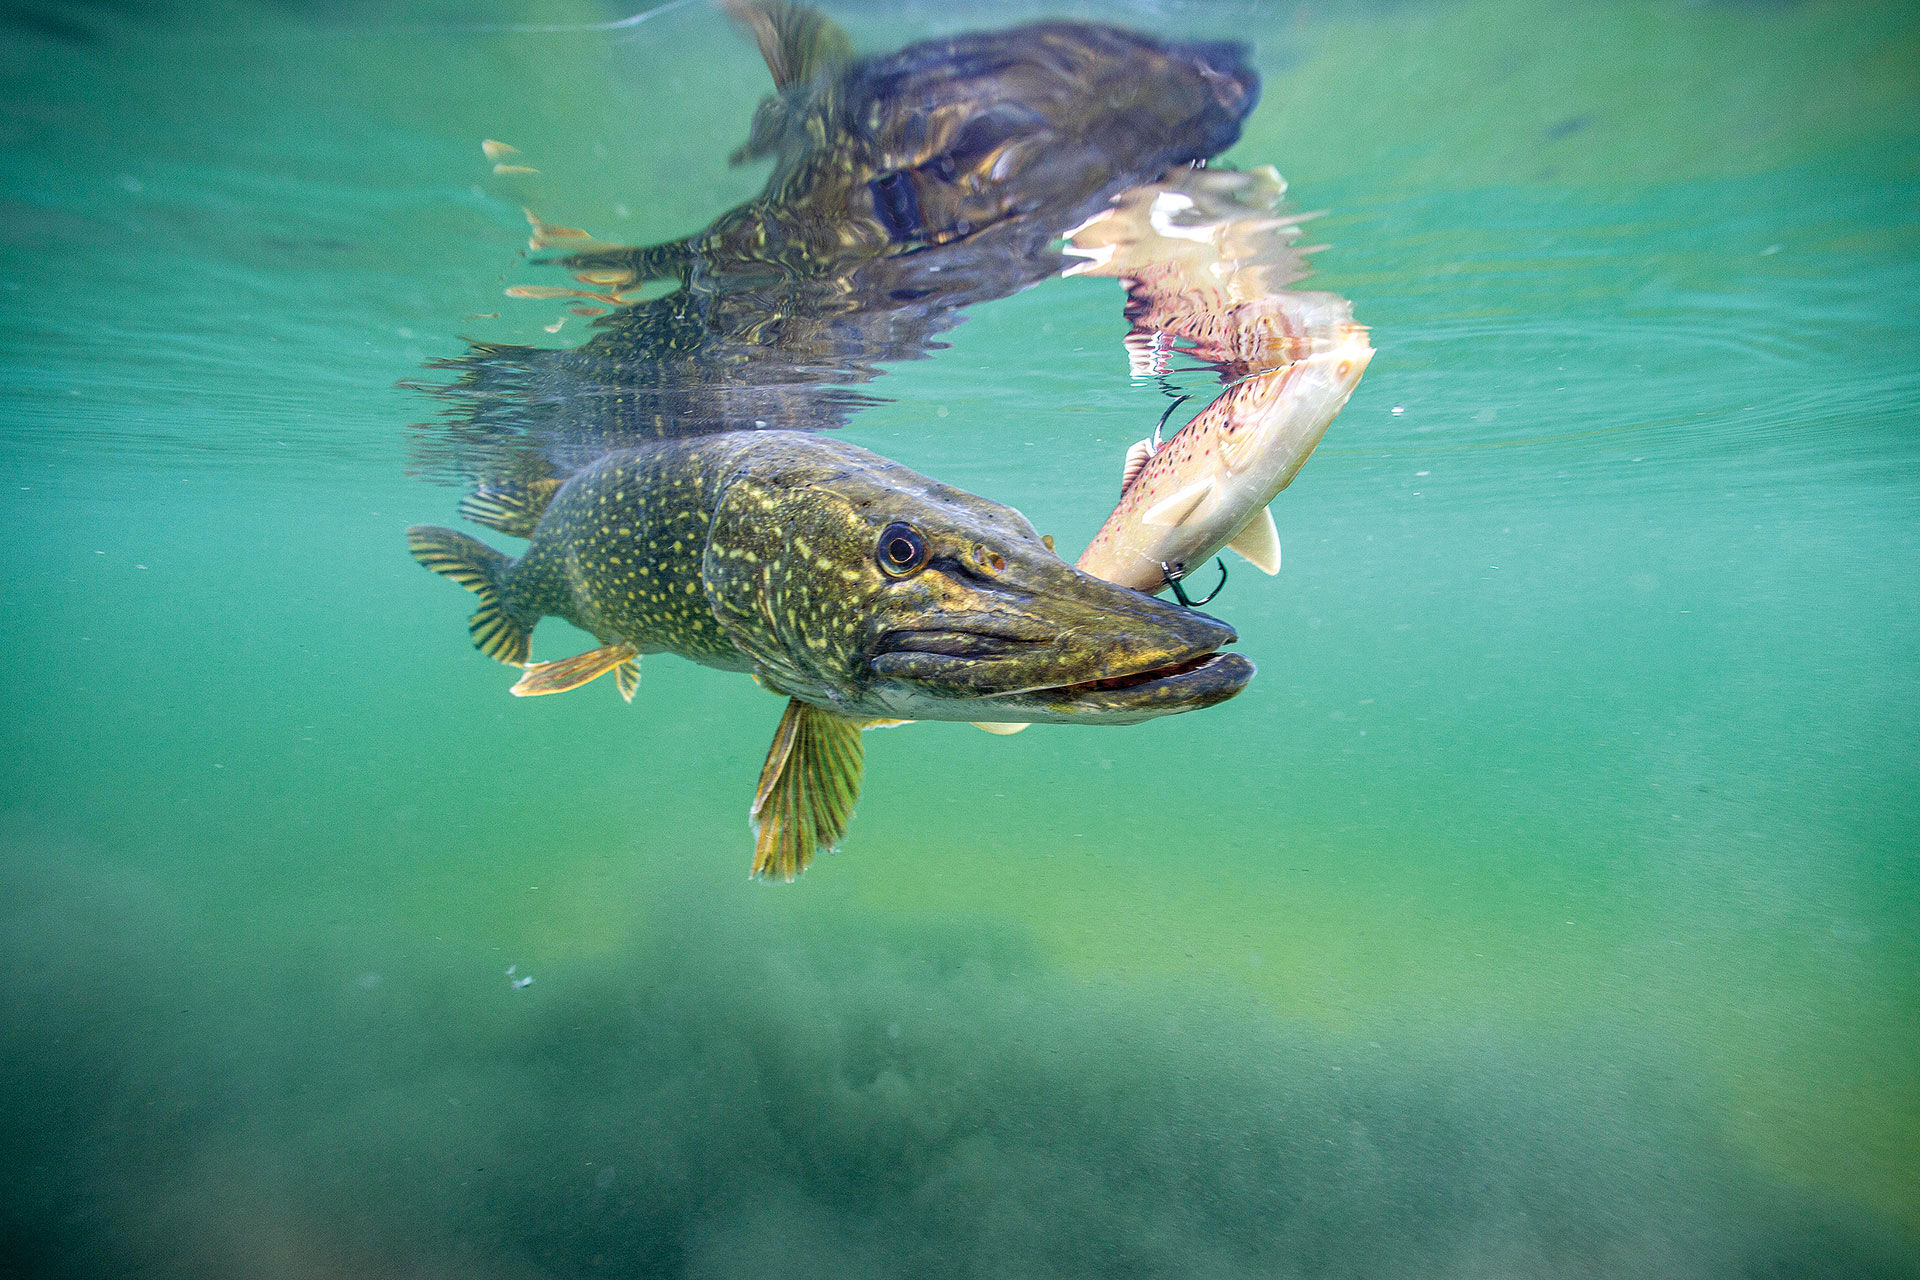  Ein gutes Beispiel für ein gelungenes Fangfoto, wenn der Fisch wieder «released» werden soll. Der Hecht muss das Wasser nicht verlassen.  